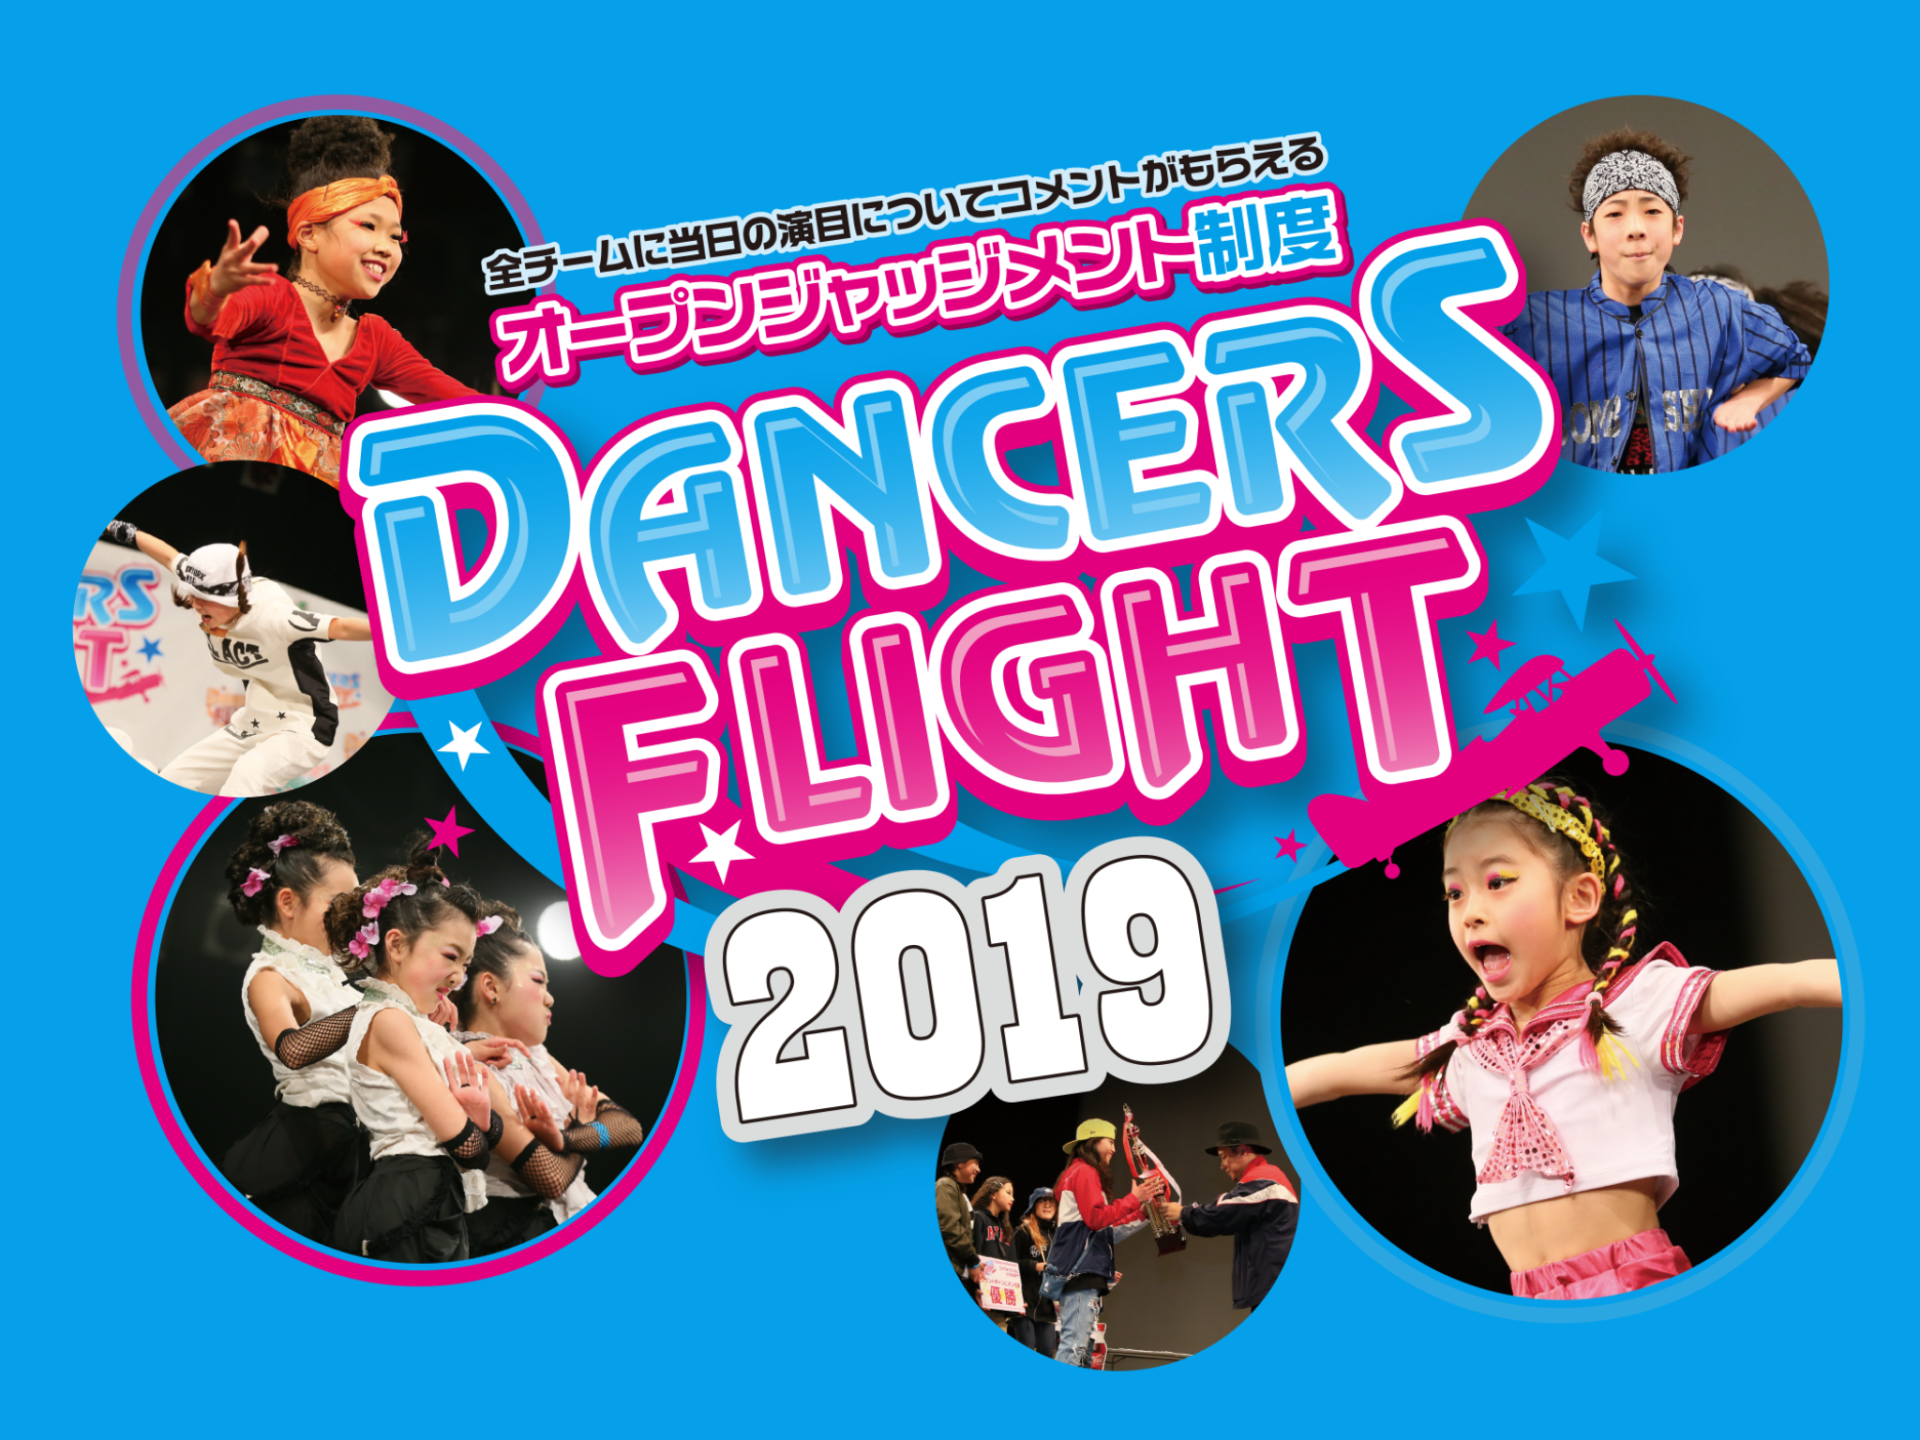 学生のためのダンスコンテスト「DANCERS FLIGHT(ダンサーズ フライト)」企画・制作